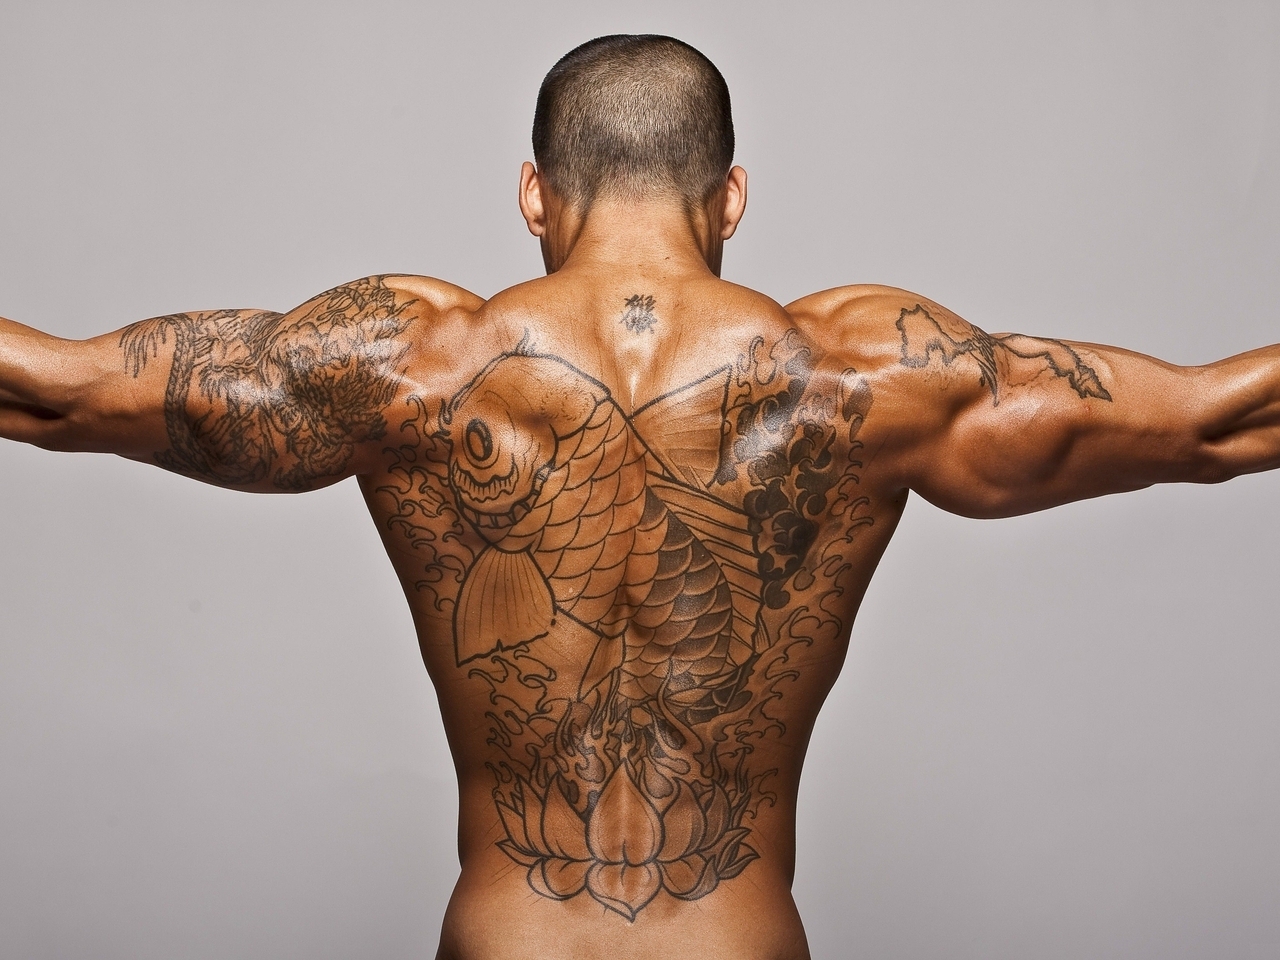 Картинка: Мужчина, мышцы, тело, спина, татуировка, лотос, рыба